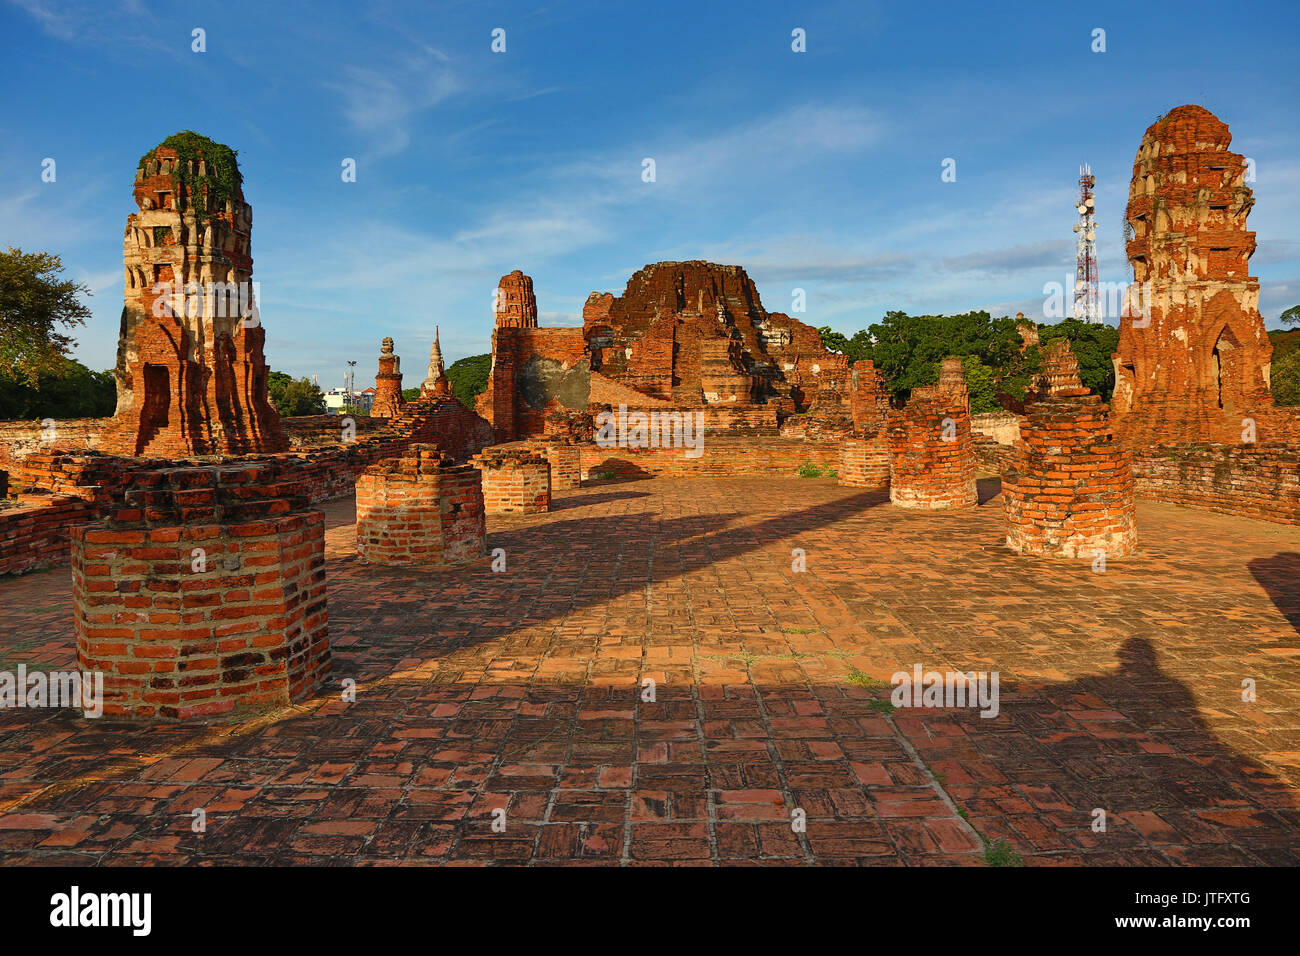 Ruins of Wat Mahathat Temple, Ayutthaya, Thailand Stock Photo